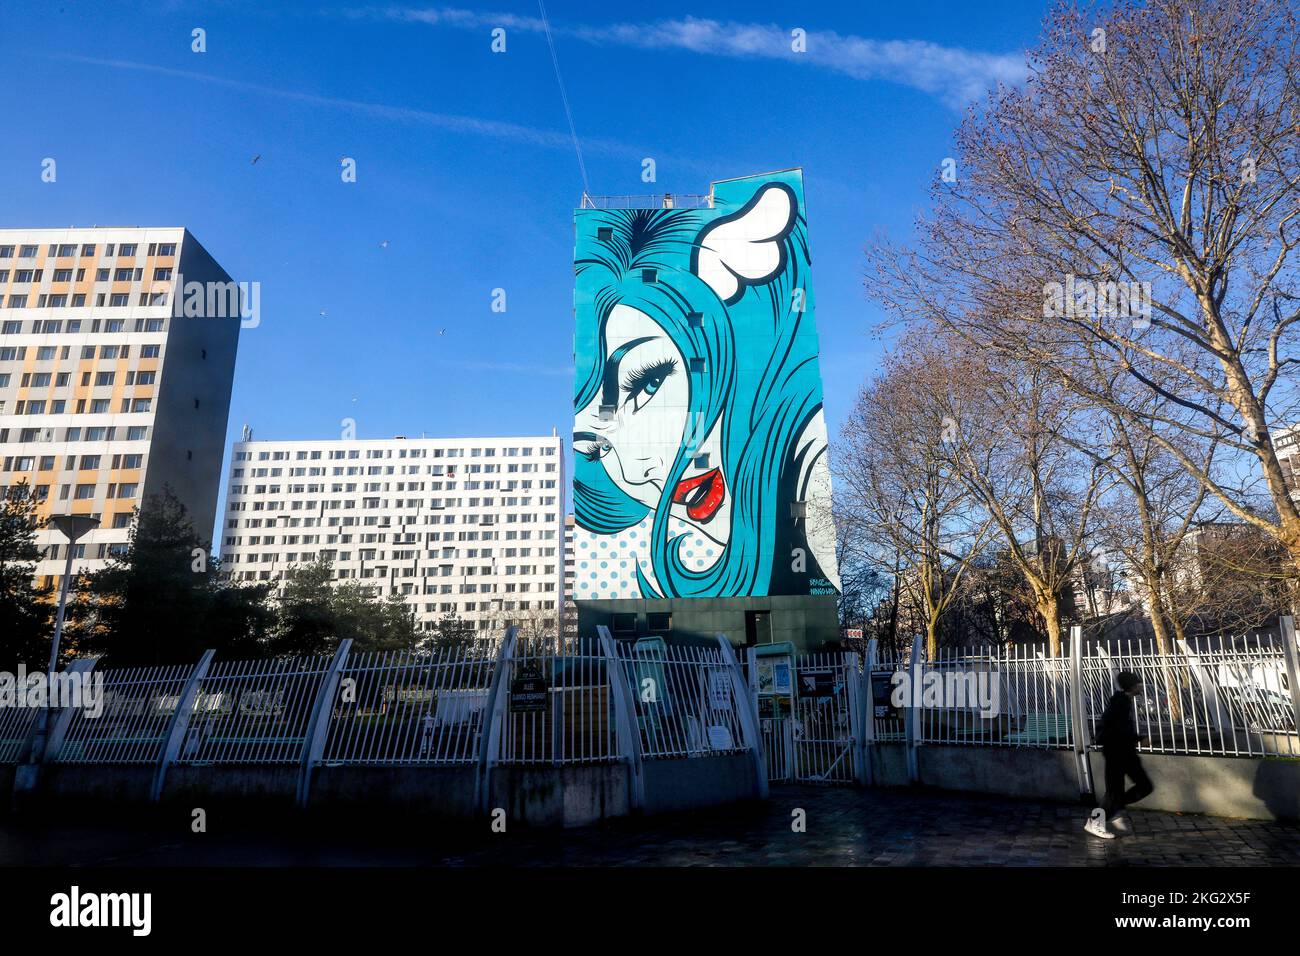 Street art a Parigi, Francia : Turncoat di D*face, Dean StocktonCette image n'est pas tombée dans le domaine public. Il faut obligatoirement obtenir un Foto Stock